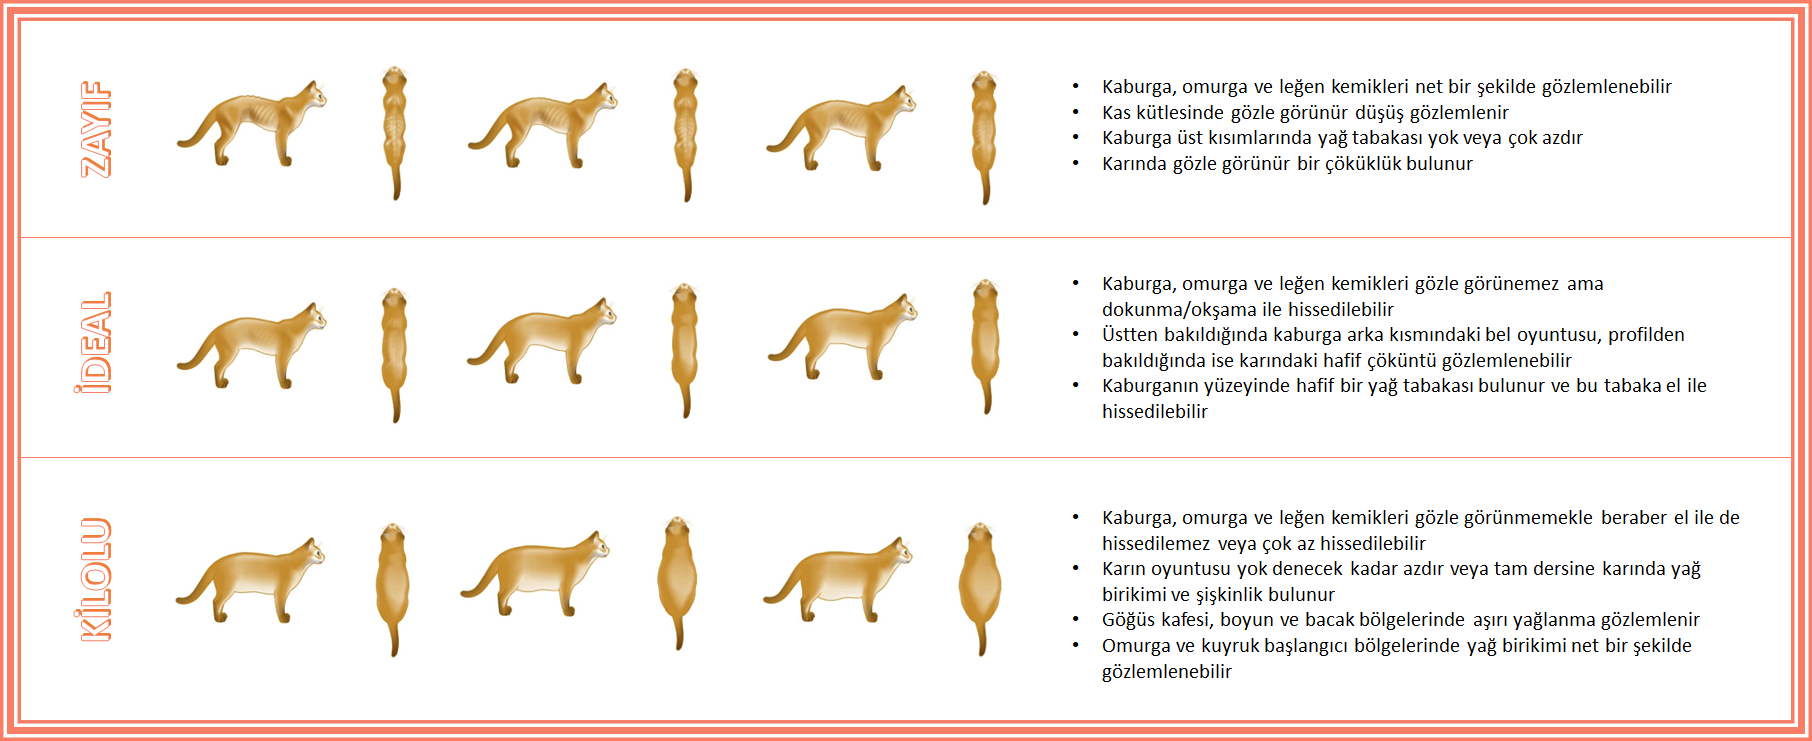 Kedilerin ideal kilosu nasıl anlaşılır?